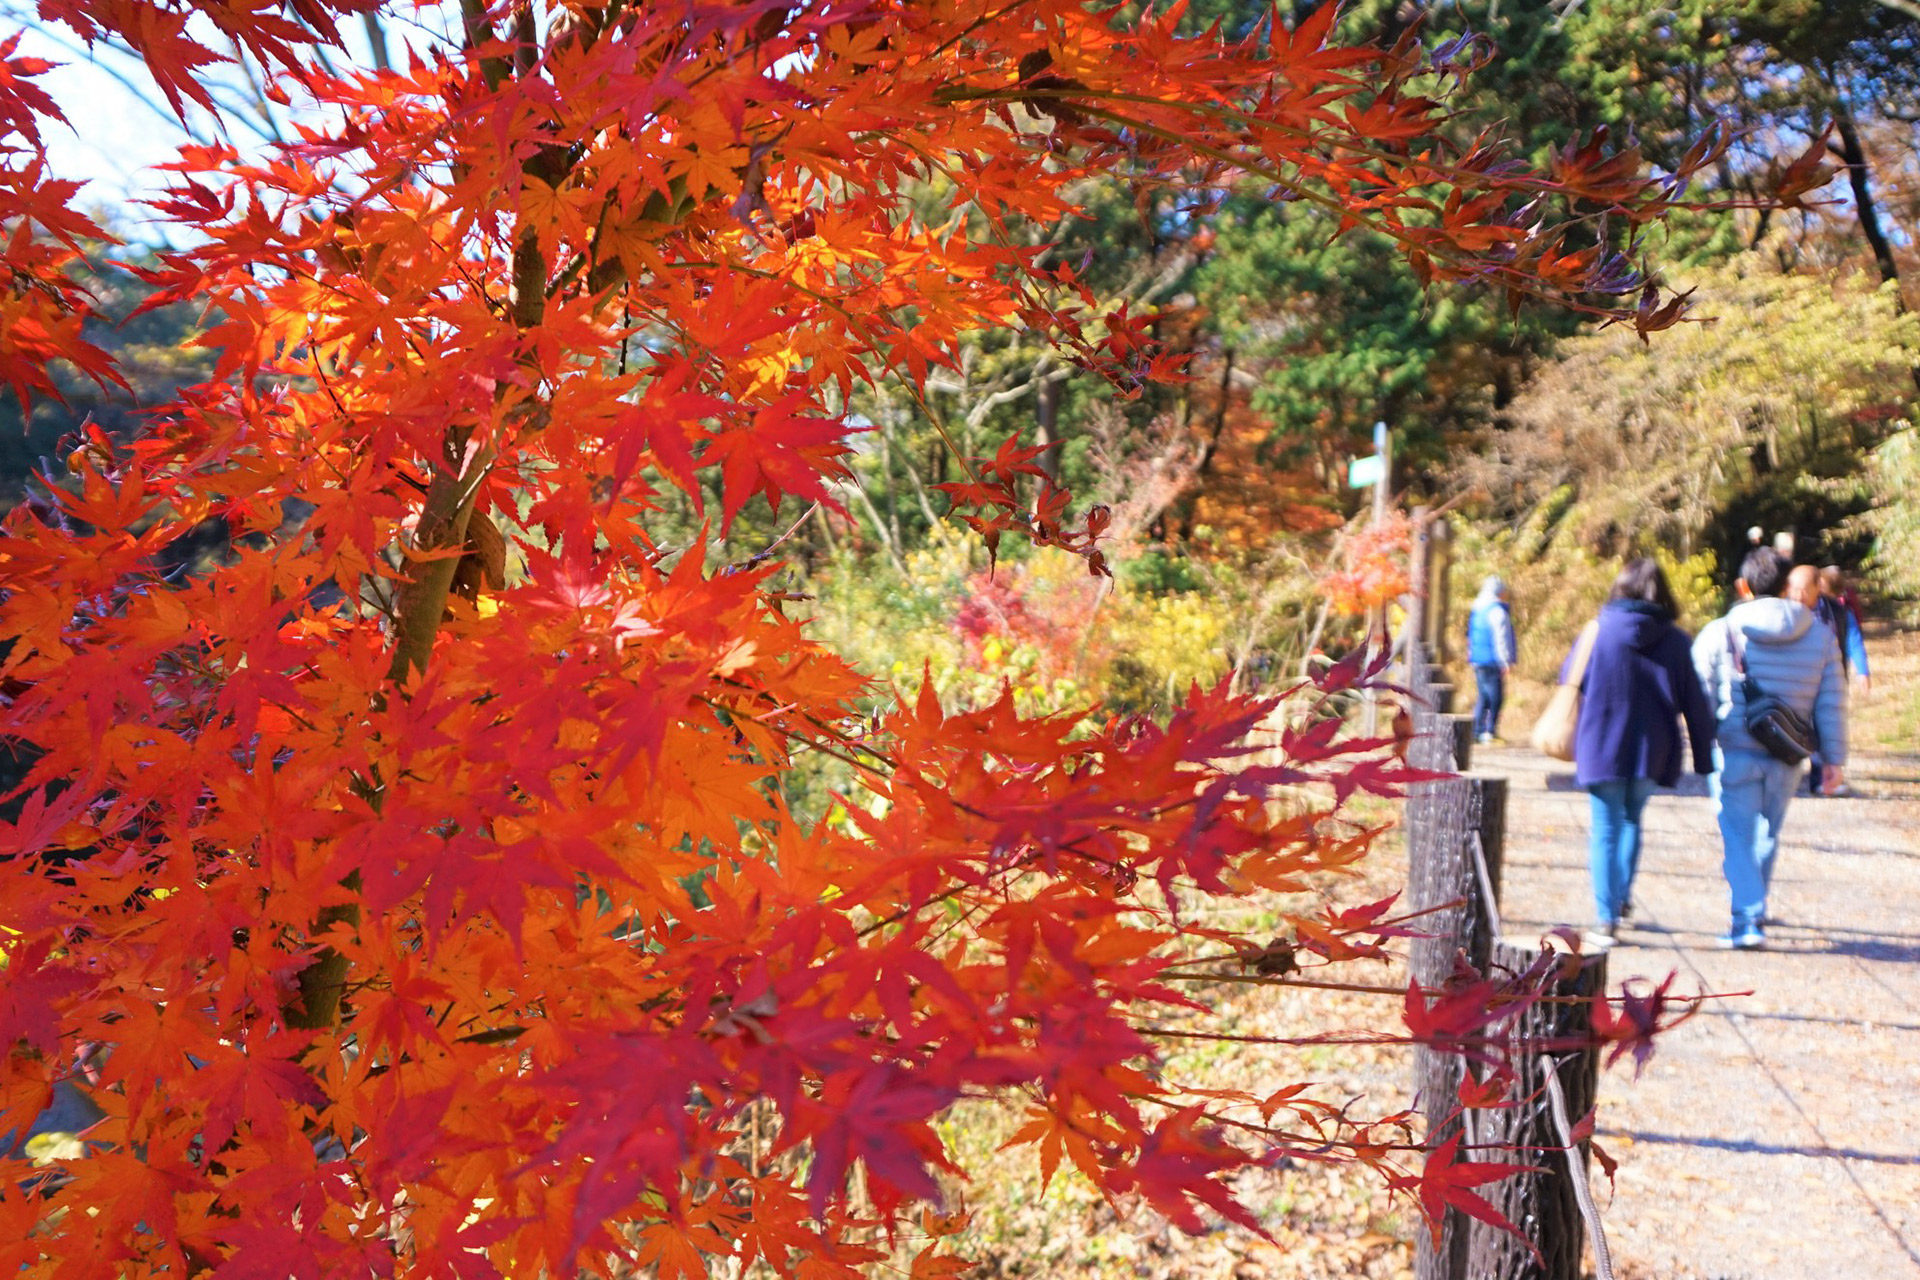 京都を訪れて秋のデートを満喫しませんか 秋のデートにおすすめの京都観光スポットをご紹介 Caedekyoto カエデ京都 紅葉と伝統美を引き継ぐバッグ